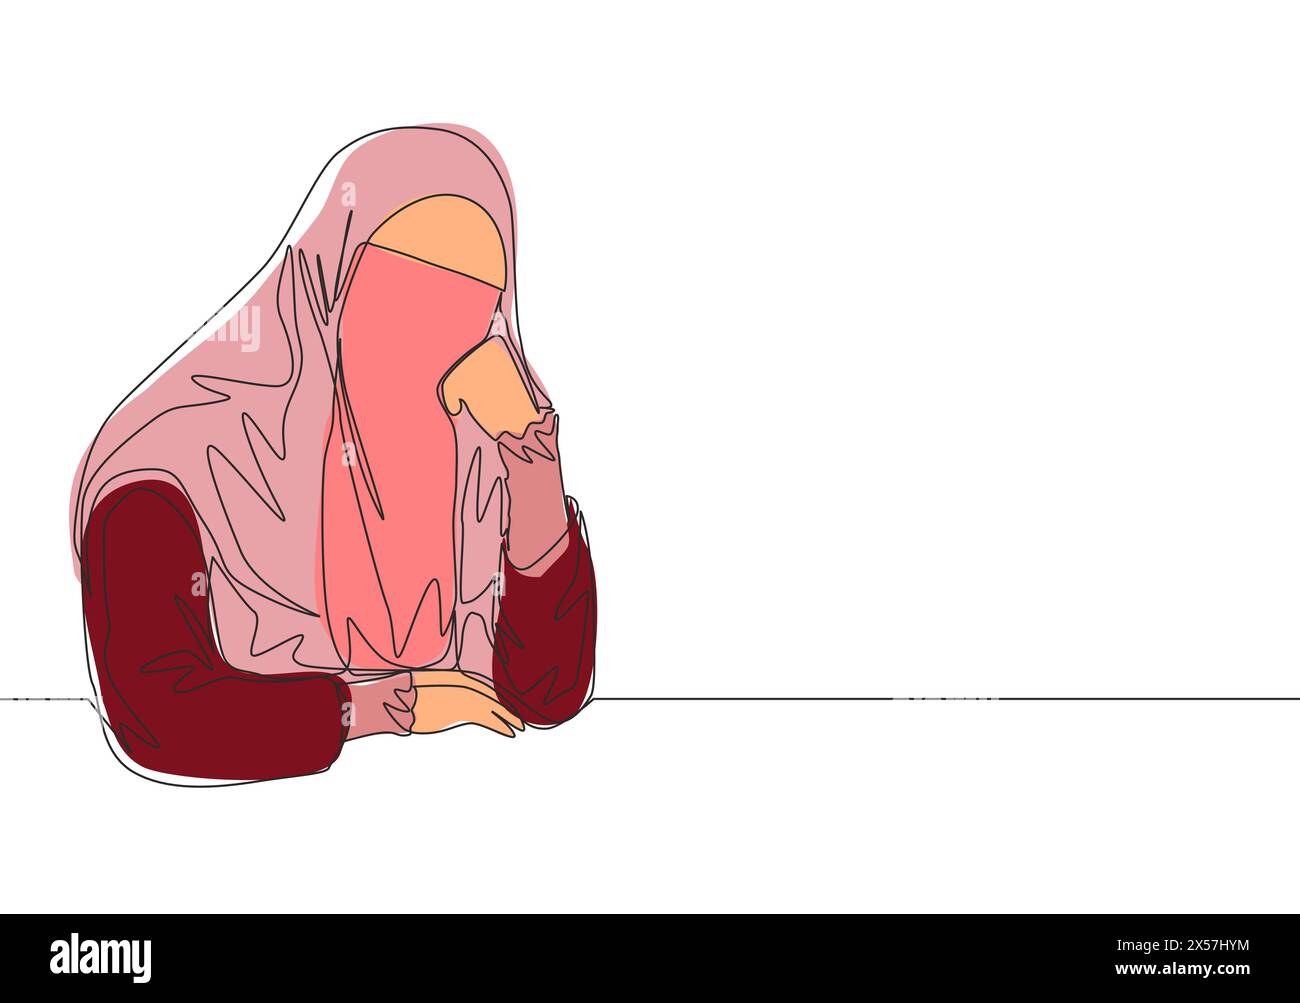 Dessin en ligne continue unique de jeune jolie muslimah saoudienne portant burqa et pensive sérieusement. Femme musulmane traditionnelle niqab avec hijab c Illustration de Vecteur